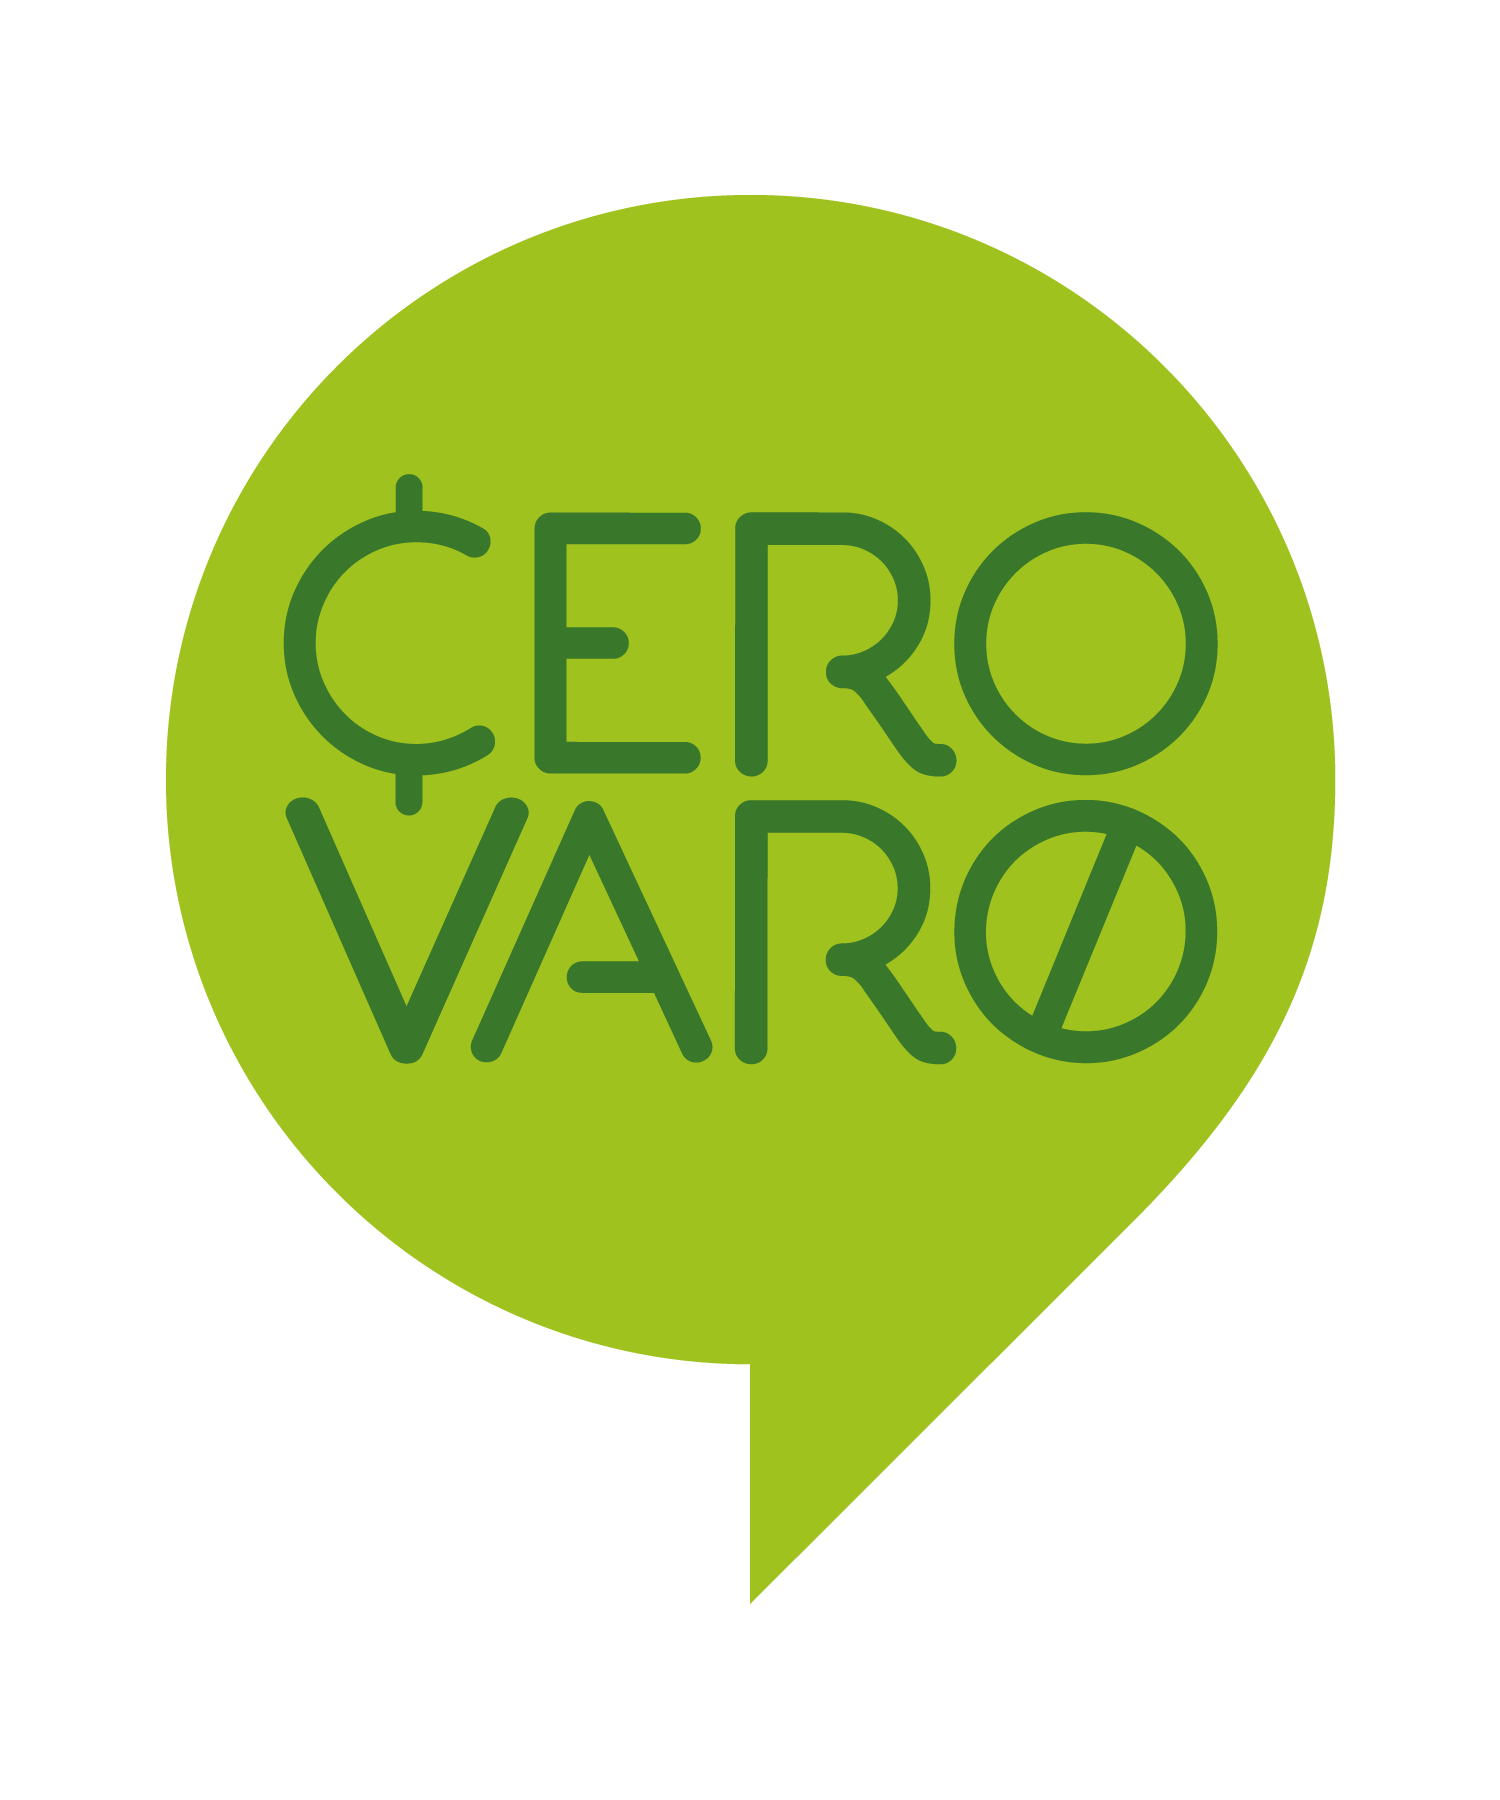 Cero Varo